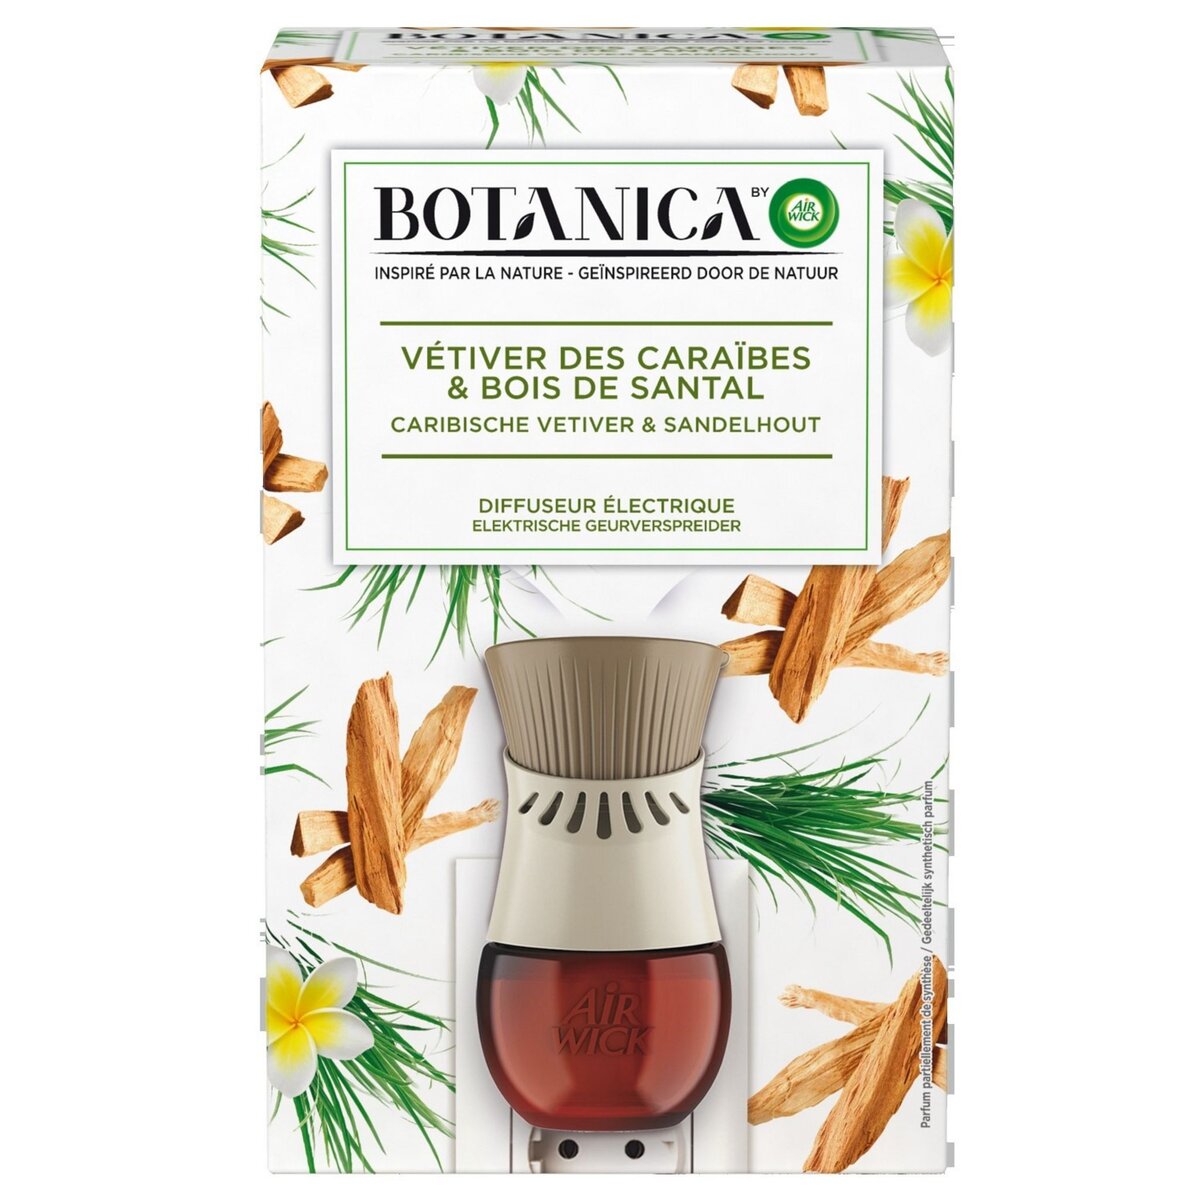 AIR WICK Botanica désodorisant spray vétiver des Caraïbes & bois de santal 19ml